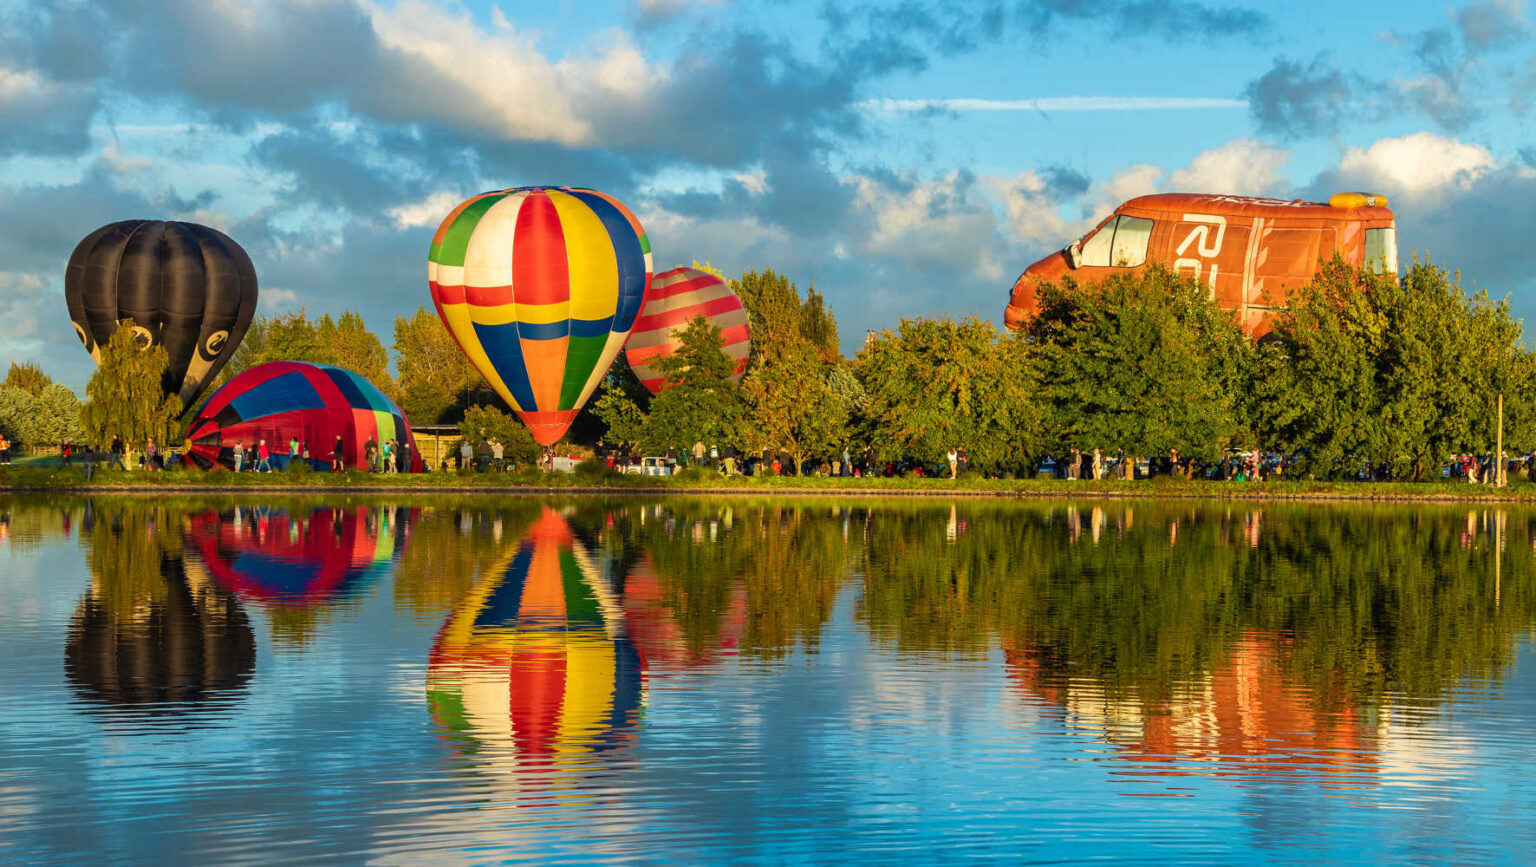 Hot air balloons at Henley Lake, Masterton, New Zealand